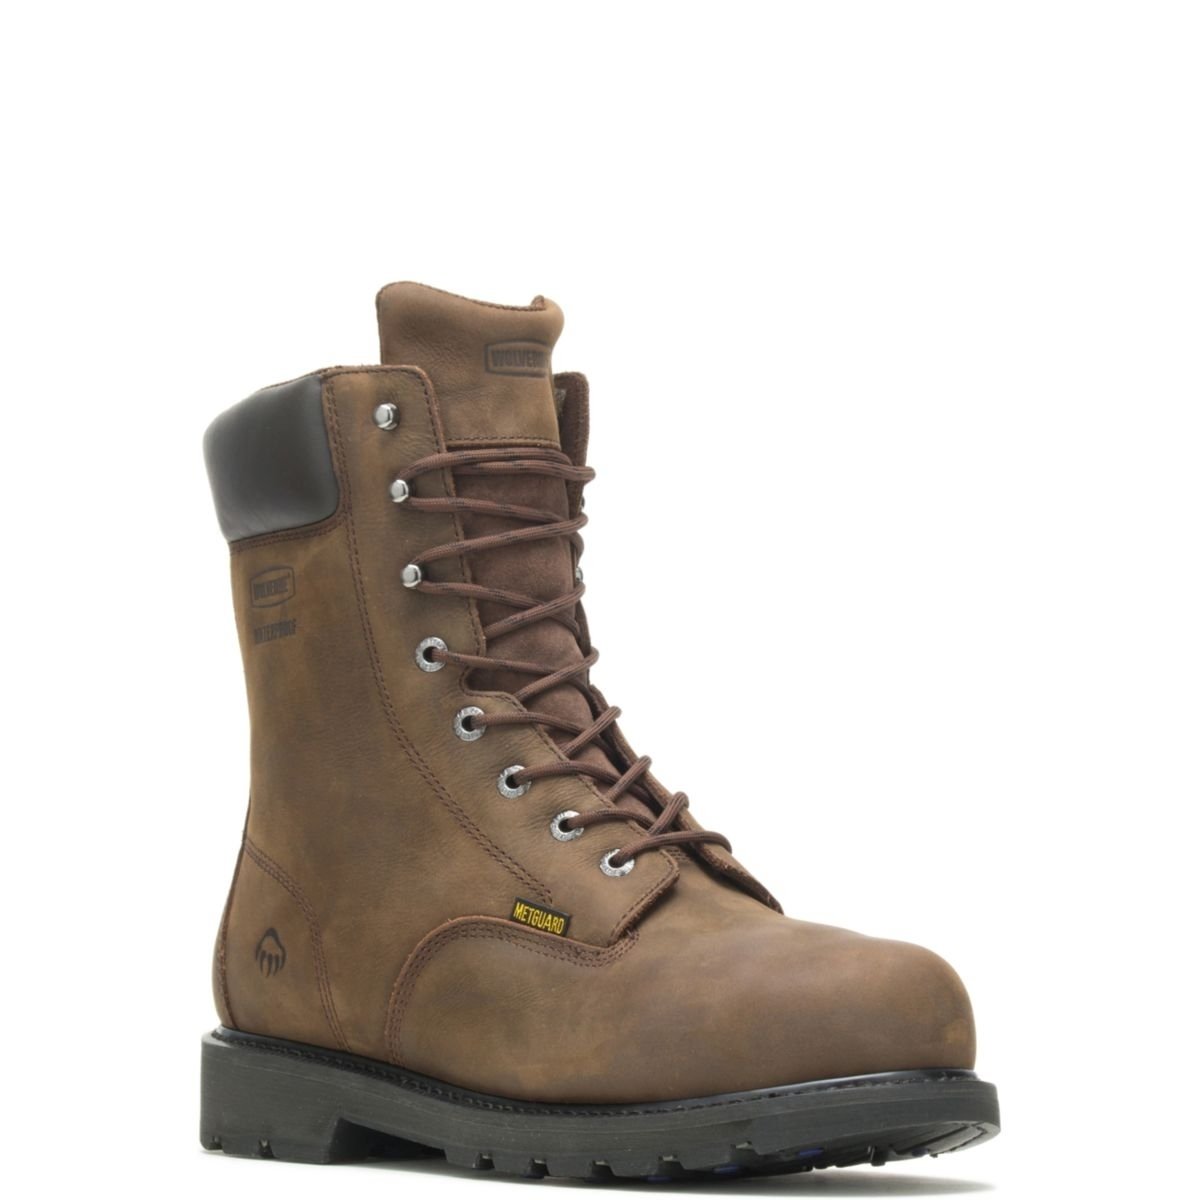 WOLVERINE Men's McKay 8 Waterproof Steel Toe Work Boot Brown - W05680 10 BROWN - BROWN, 13 XW US